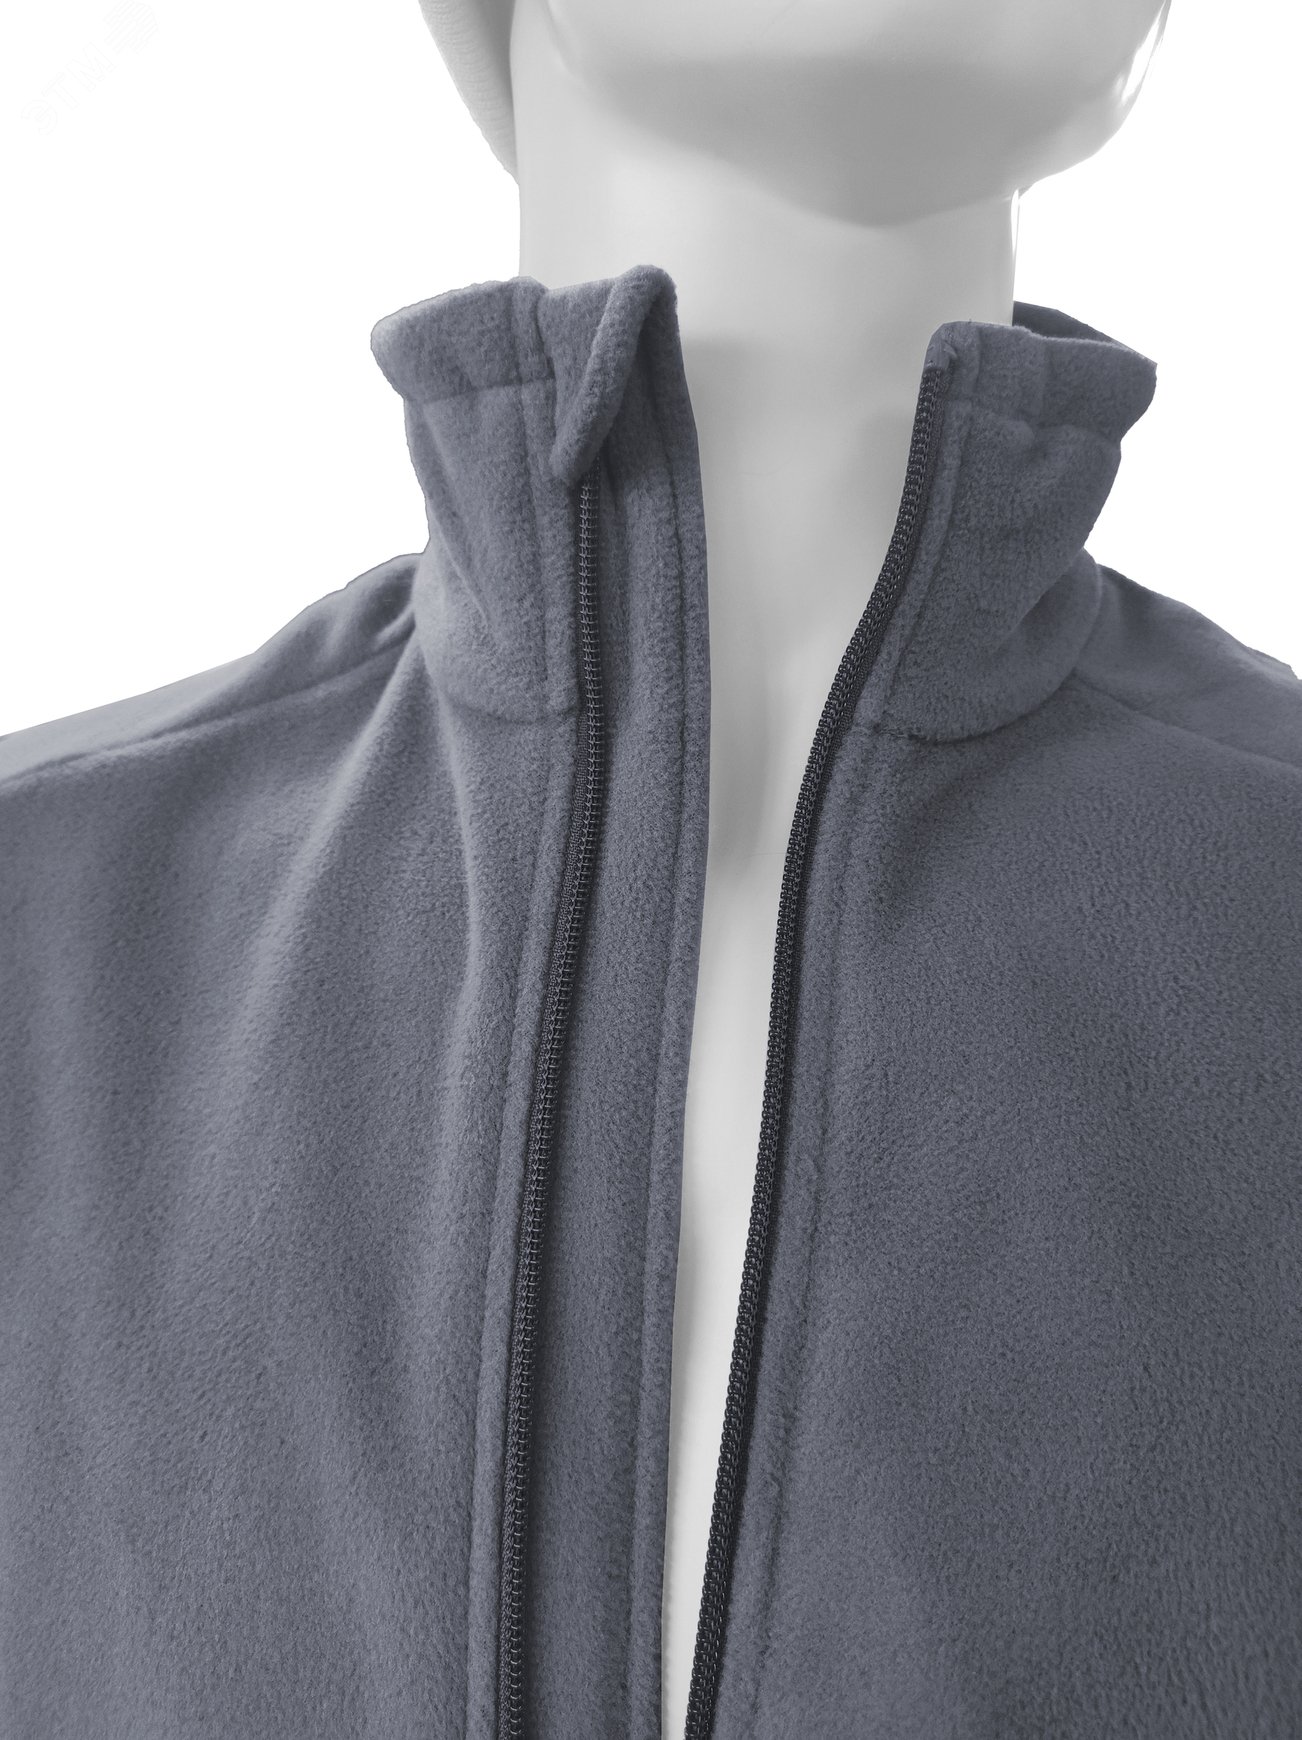 Куртка флисовая арт. JF-01 на молнии цв. серый 52-54 р. L 142302 Эталон-Спецодежда - превью 9